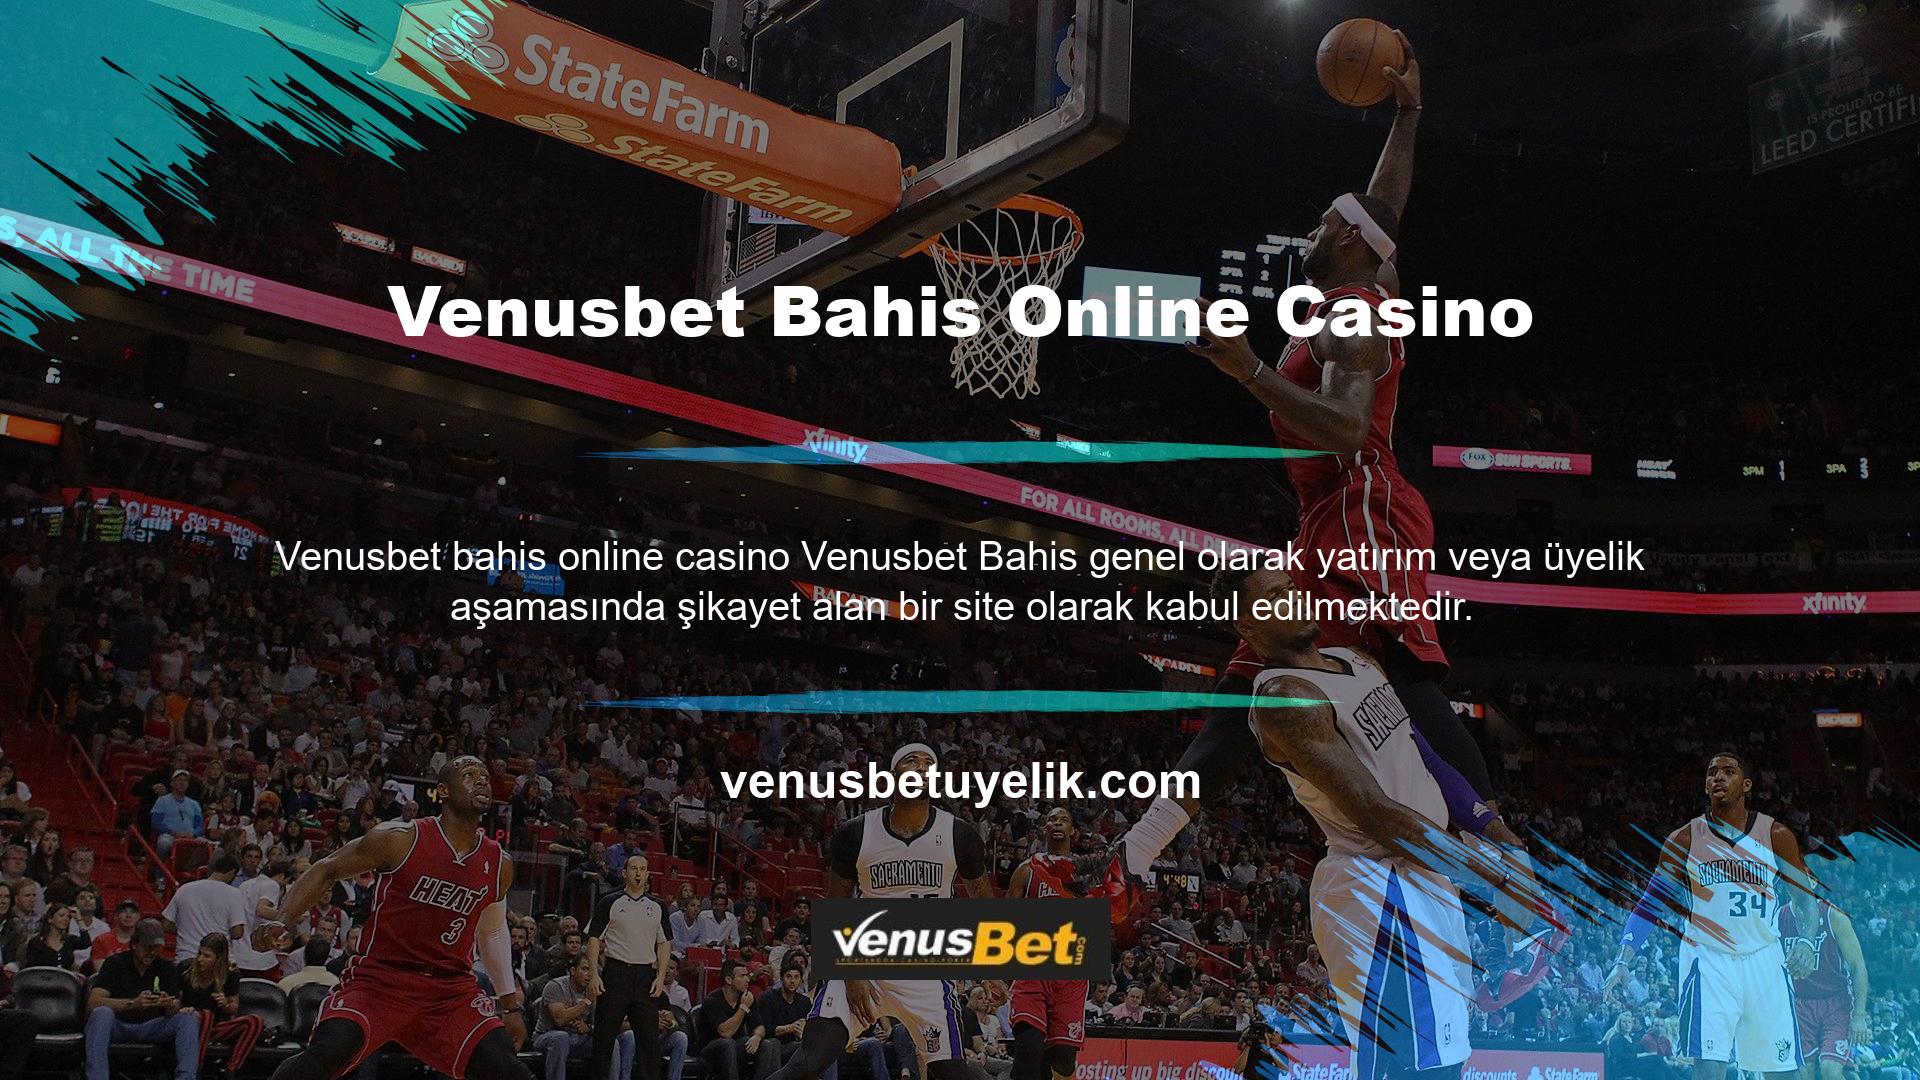 Kayıt aşamasında şikayetleri kabul etmenin temel amaçlarından biri, Venusbet Bahis Online Casino ve Casino Web Sitesinde kayıt yaşını 18 yaş ile sınırlamaktır